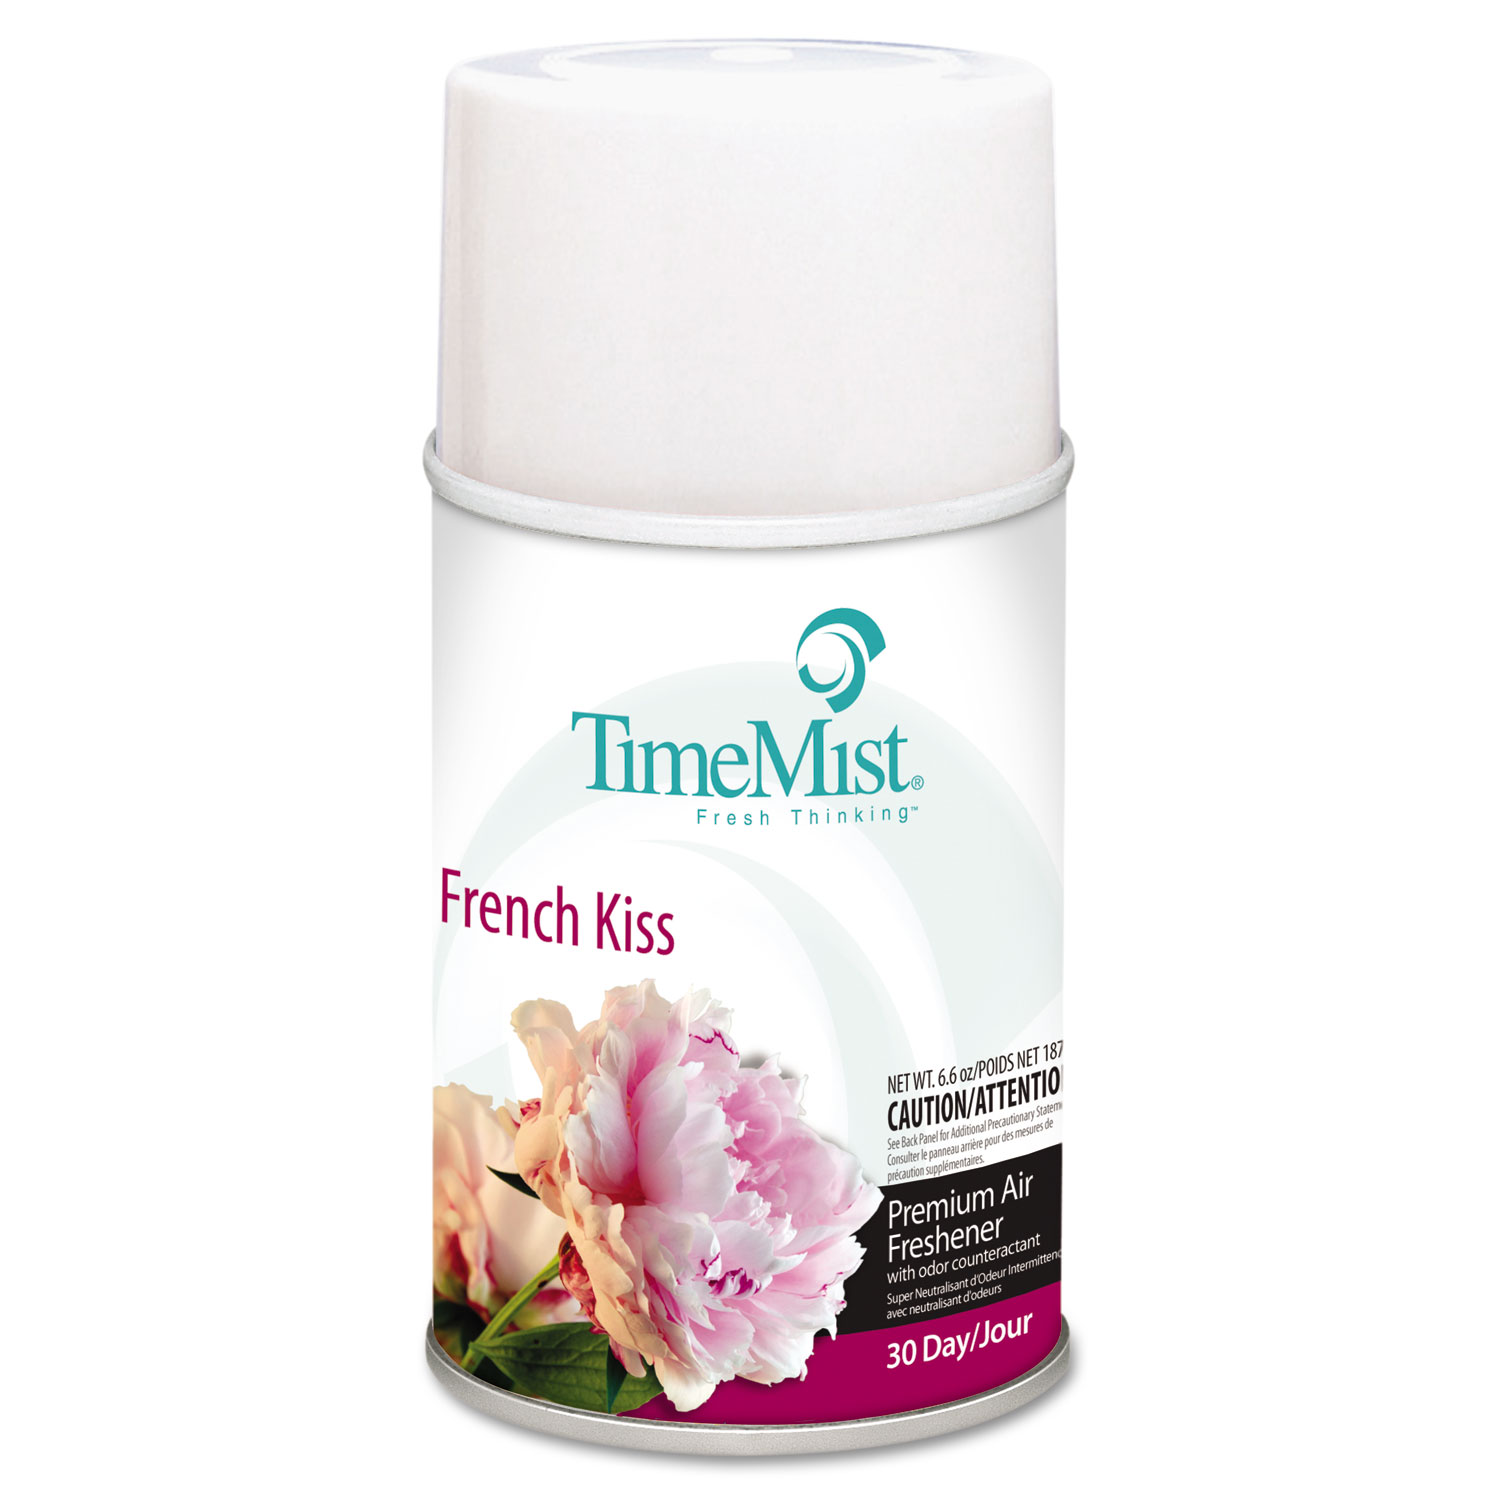 Metered Fragrance Dispenser Refill, French Kiss, 6.6oz, Aerosol